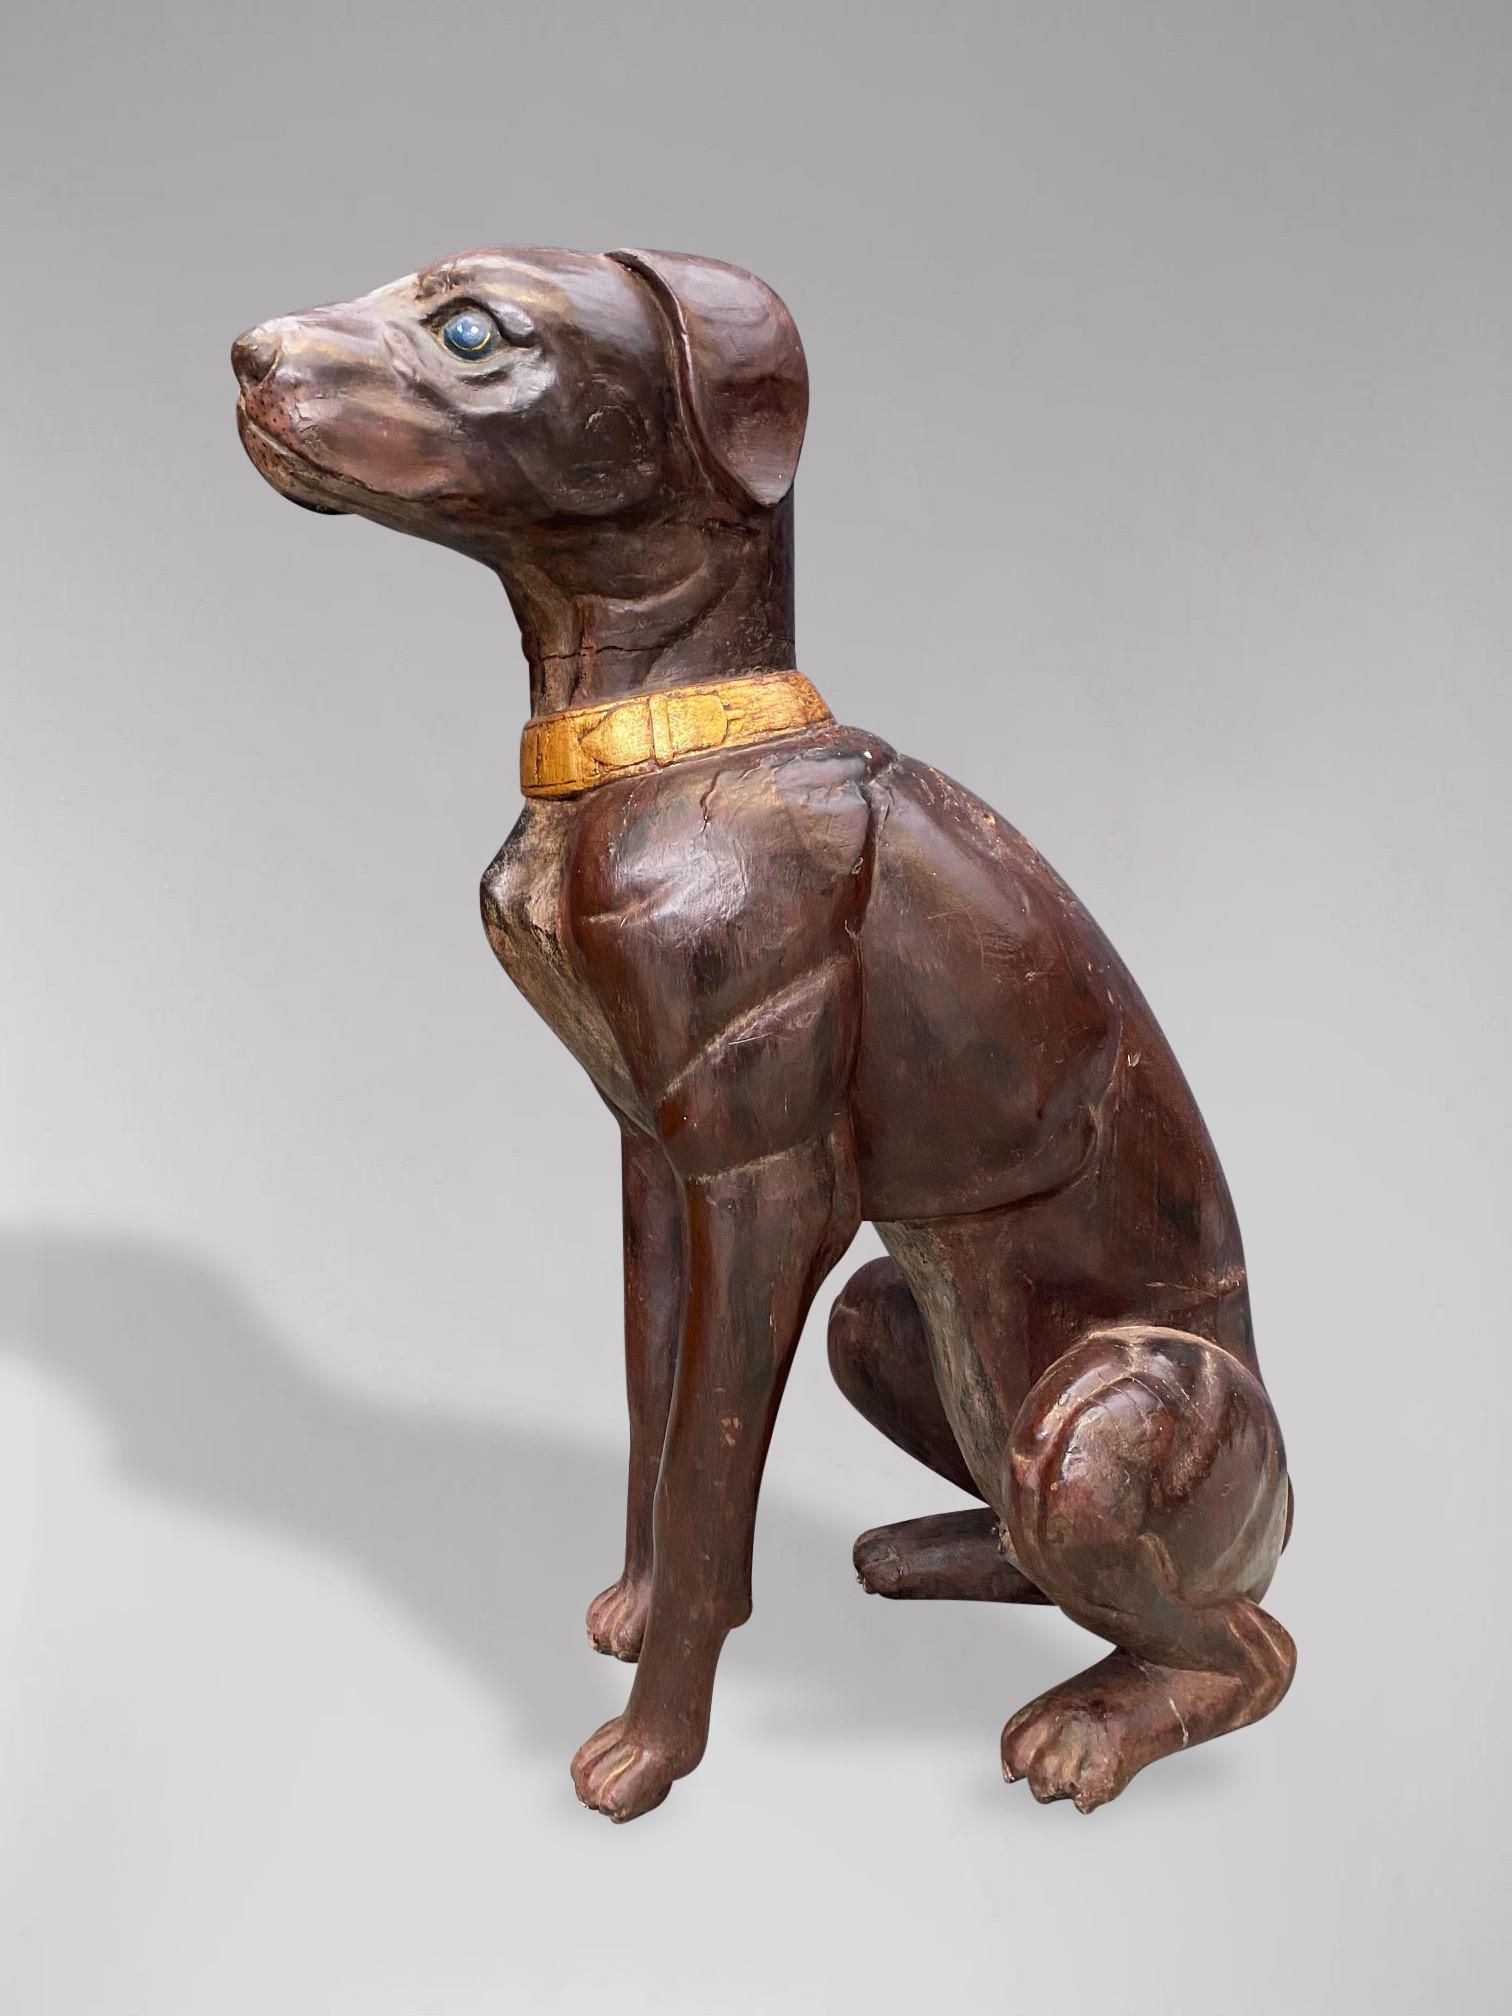 Statue de chien en cuir de grande qualité de la fin du XIXe siècle, de taille réelle, avec des yeux peints et un collier doré. Superbe couleur et patine dans l'ensemble. Livraison gratuite pour le Royaume-Uni et le reste du monde.

Les dimensions